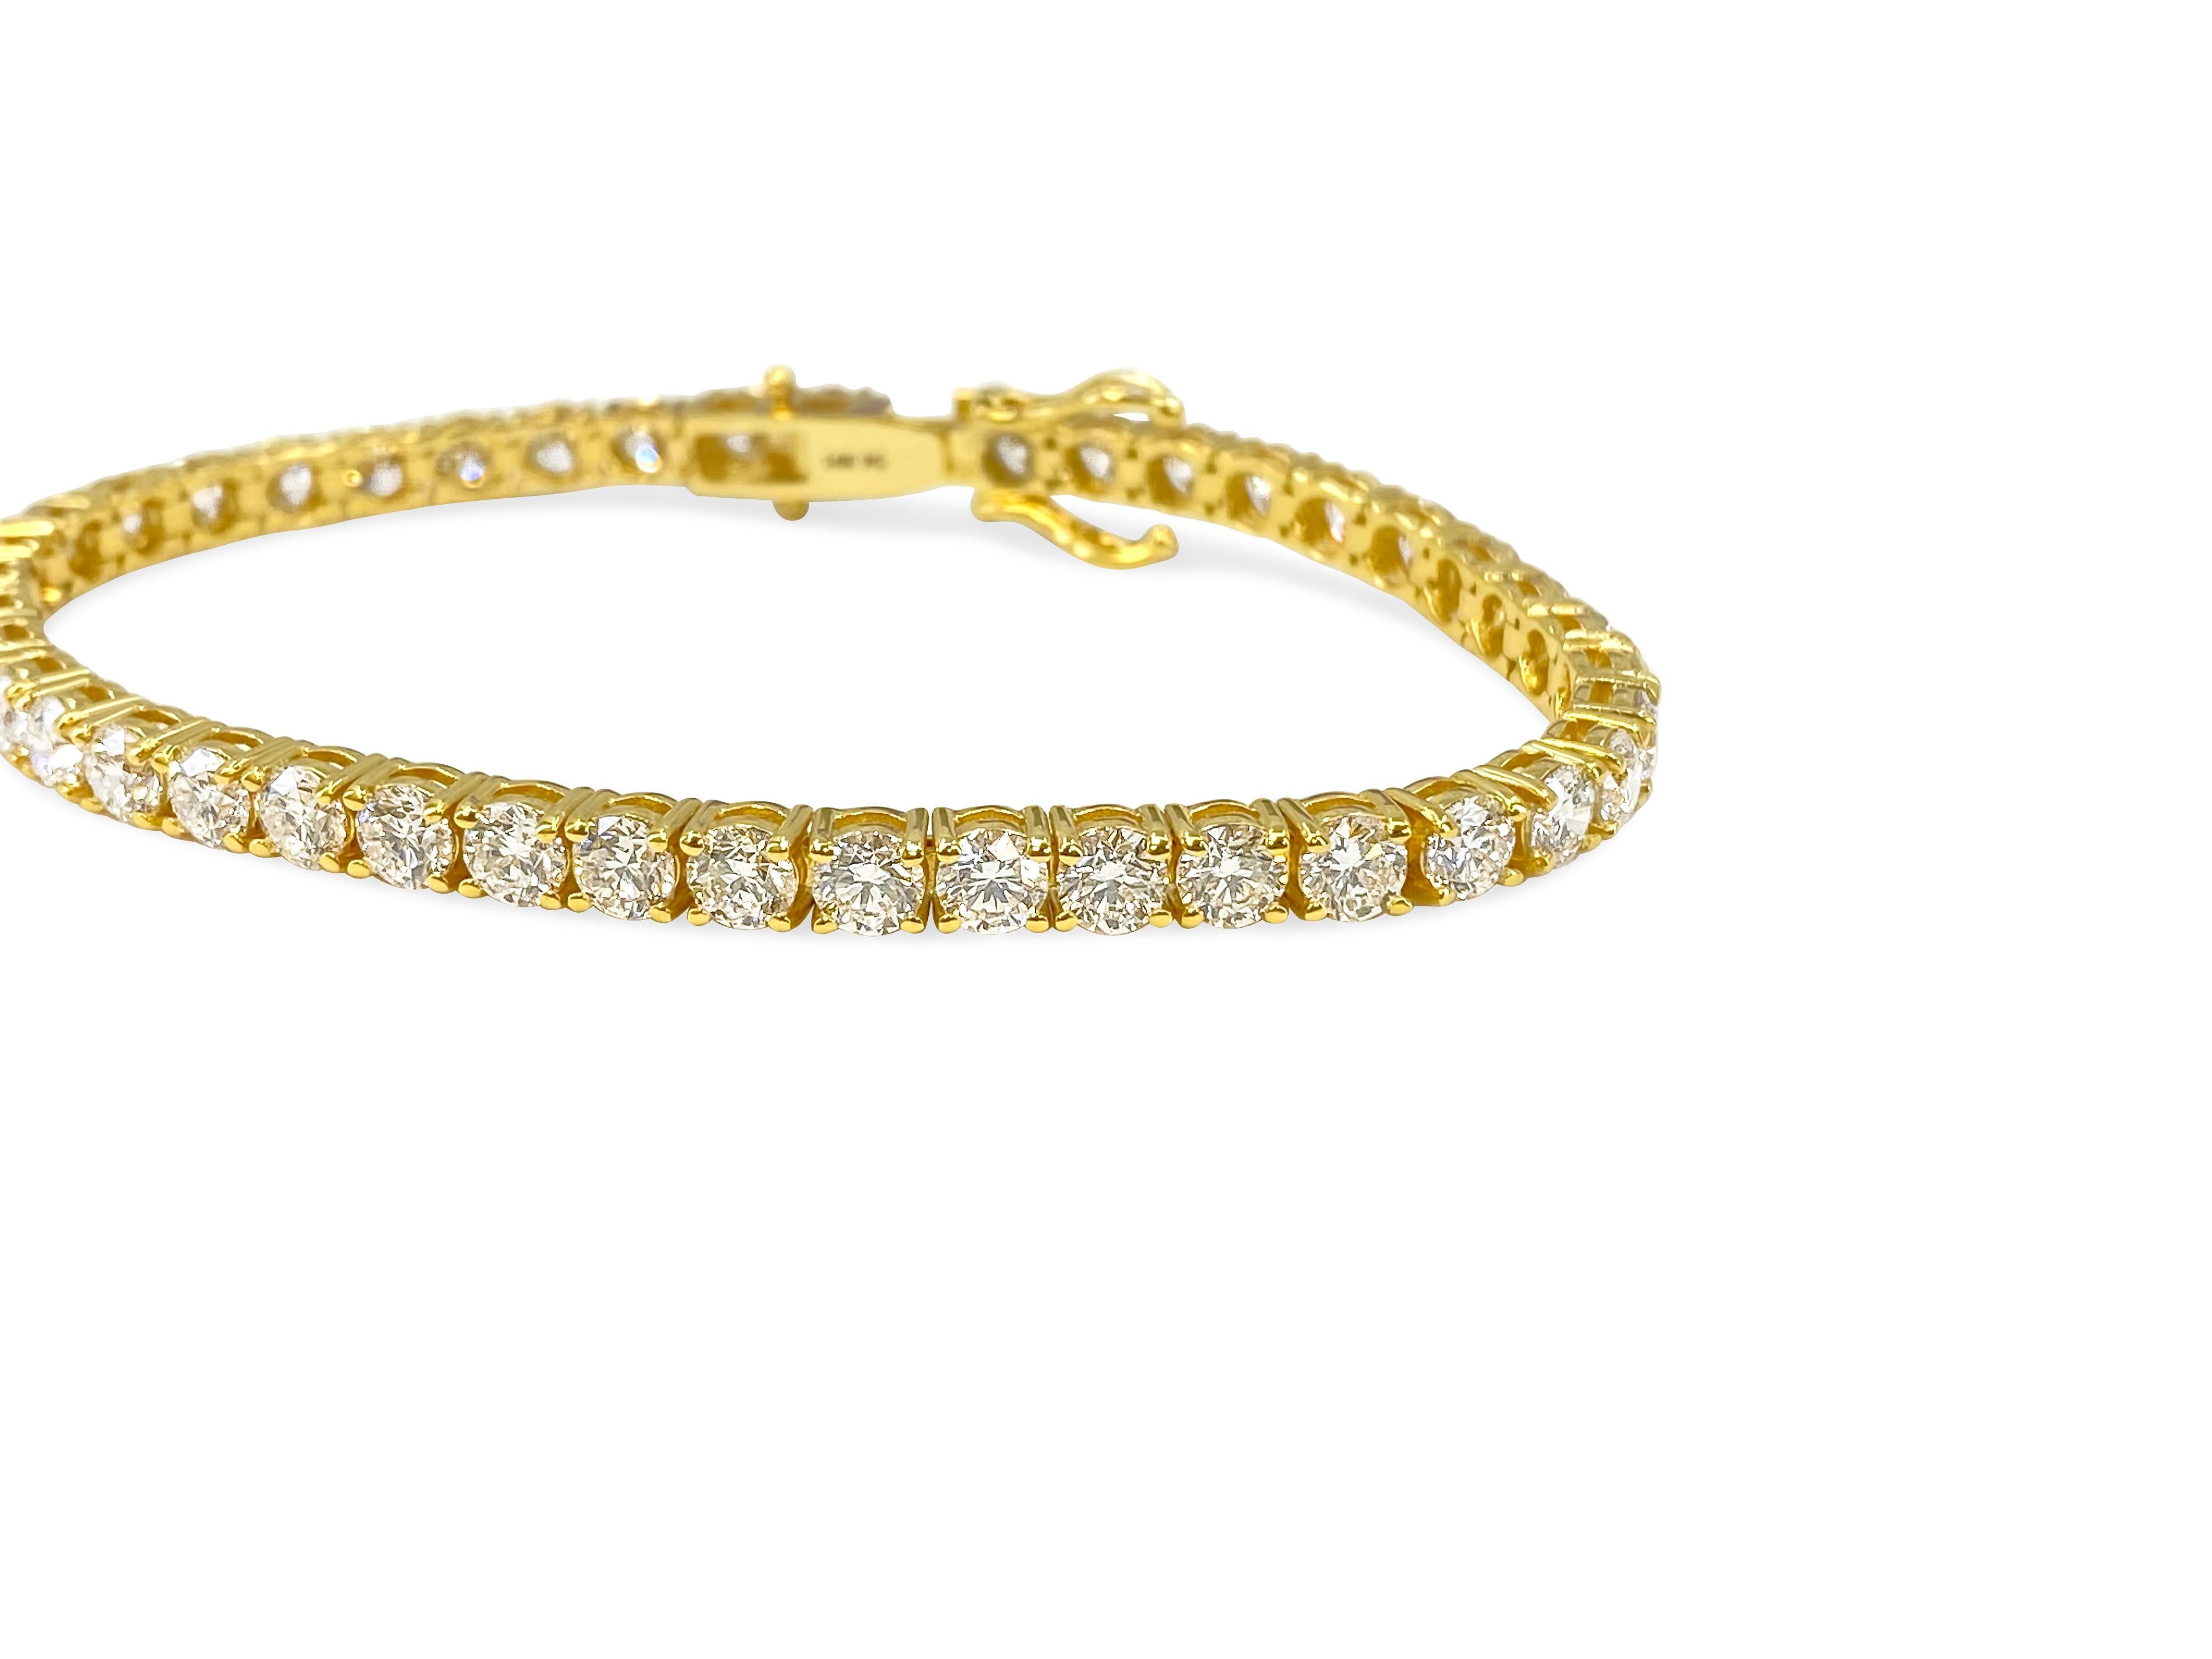 Fabriqué en or jaune luxueux de 14 carats, ce bracelet exquis affiche un total de 10,5 carats de diamants éblouissants. Avec de très, très légères imperfections (VVS) et une gamme de couleurs H-I, ces diamants naturels extraits de la terre brillent